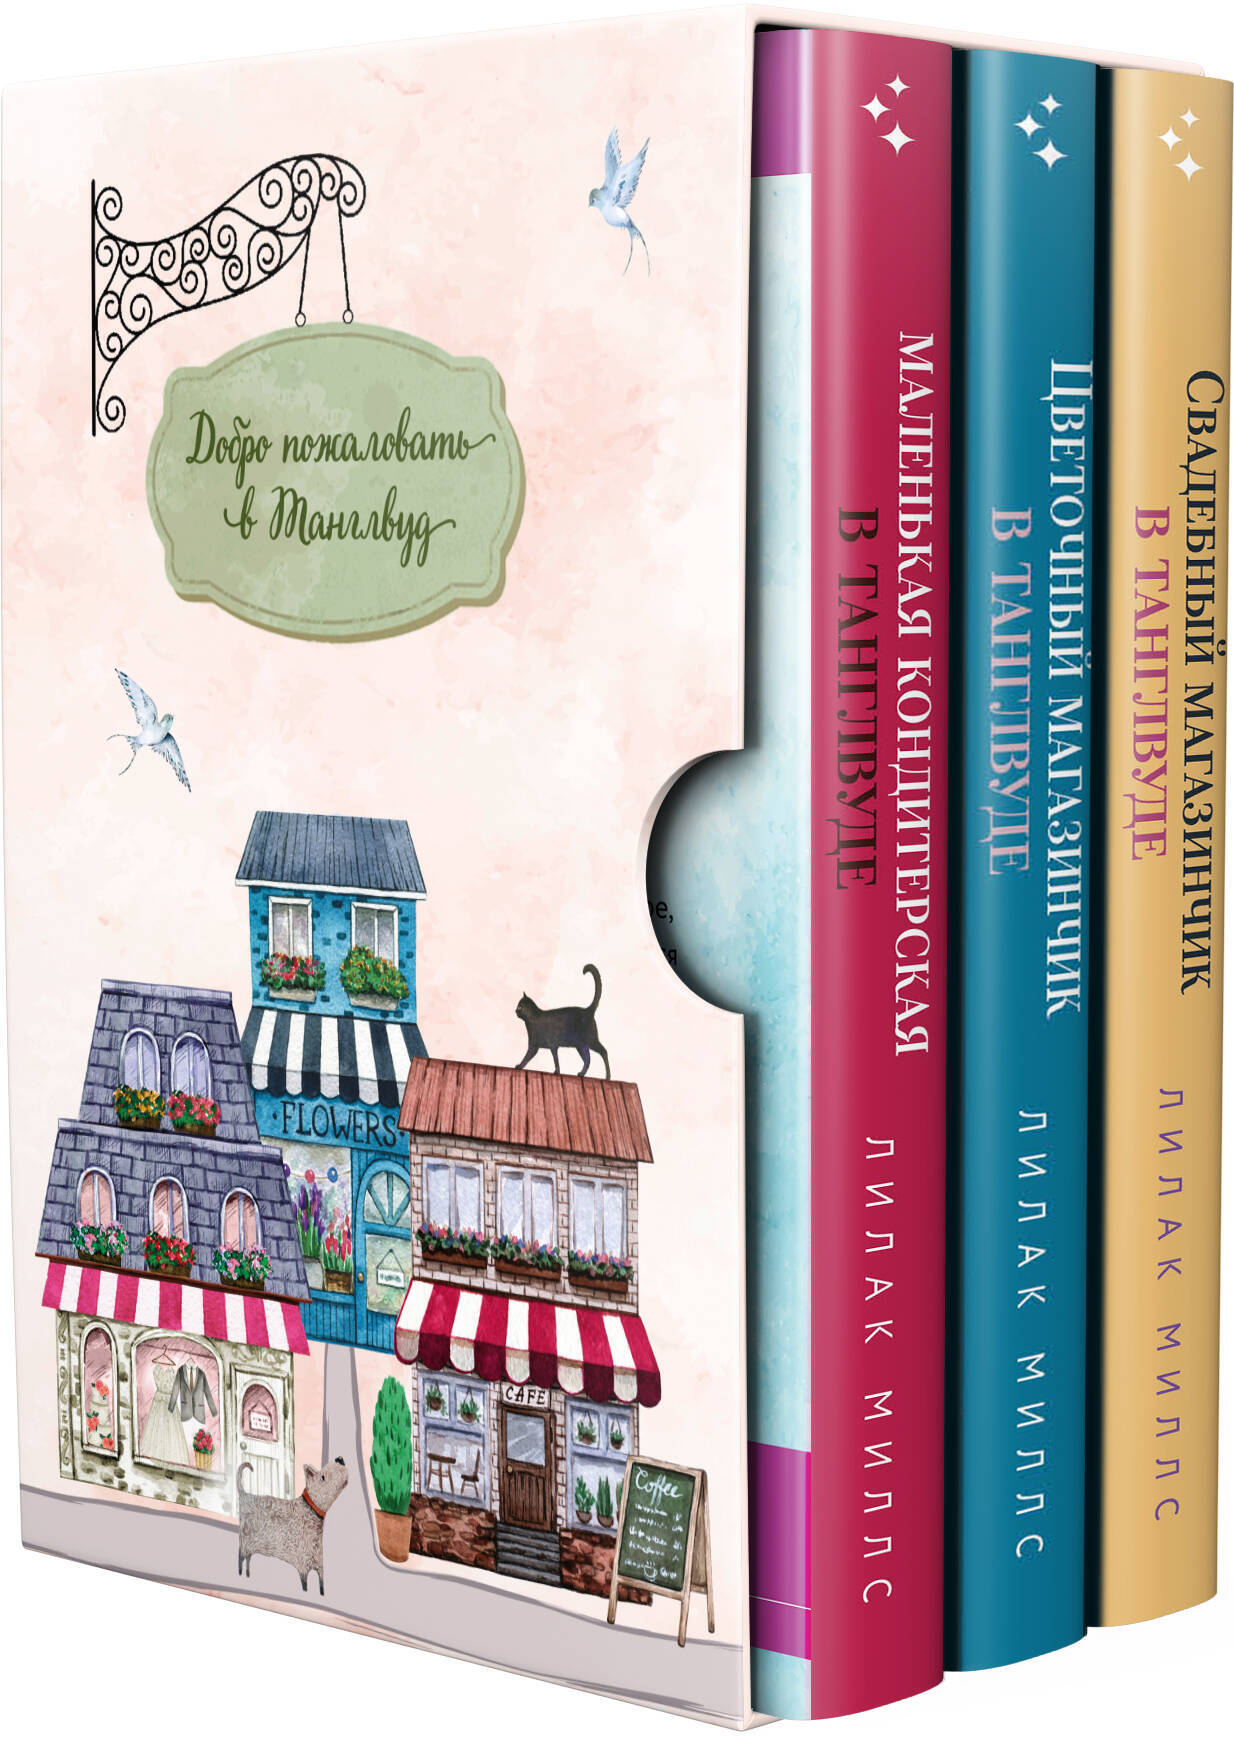 Комплект из 3-х книг Лилак Миллс в подарочном футляре (Маленькая кондитерская в Танглвуде + Цветочный магазинчик в Танглвуде + Свадебный магазинчик в Танглвуде)